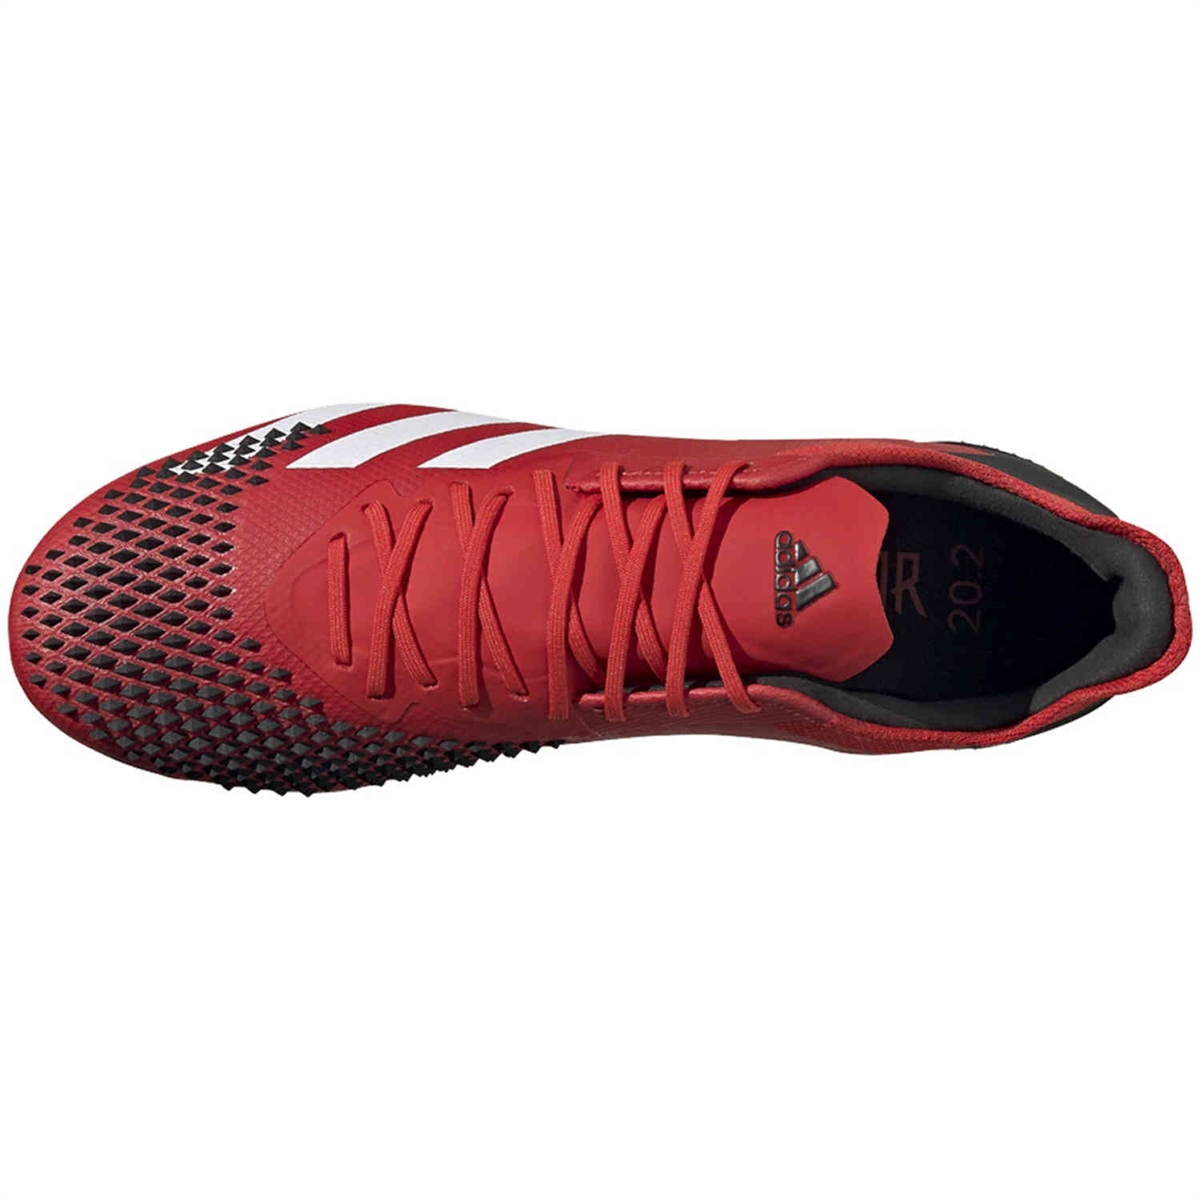 Adidas Predator 20.2 FG Red | Soccerchili.com